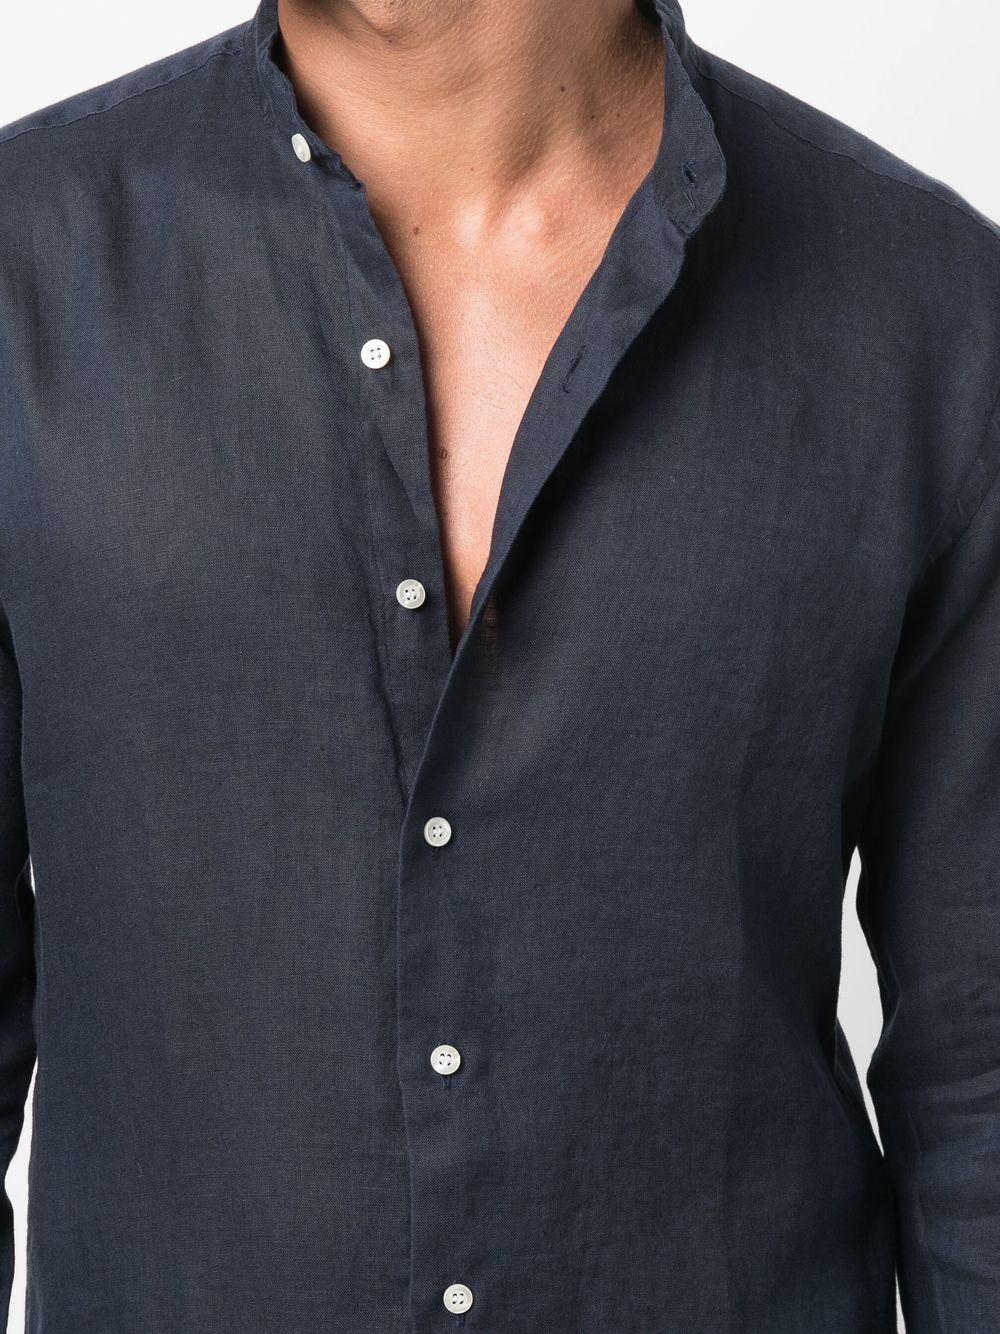 Navy blue button-up linen shirt